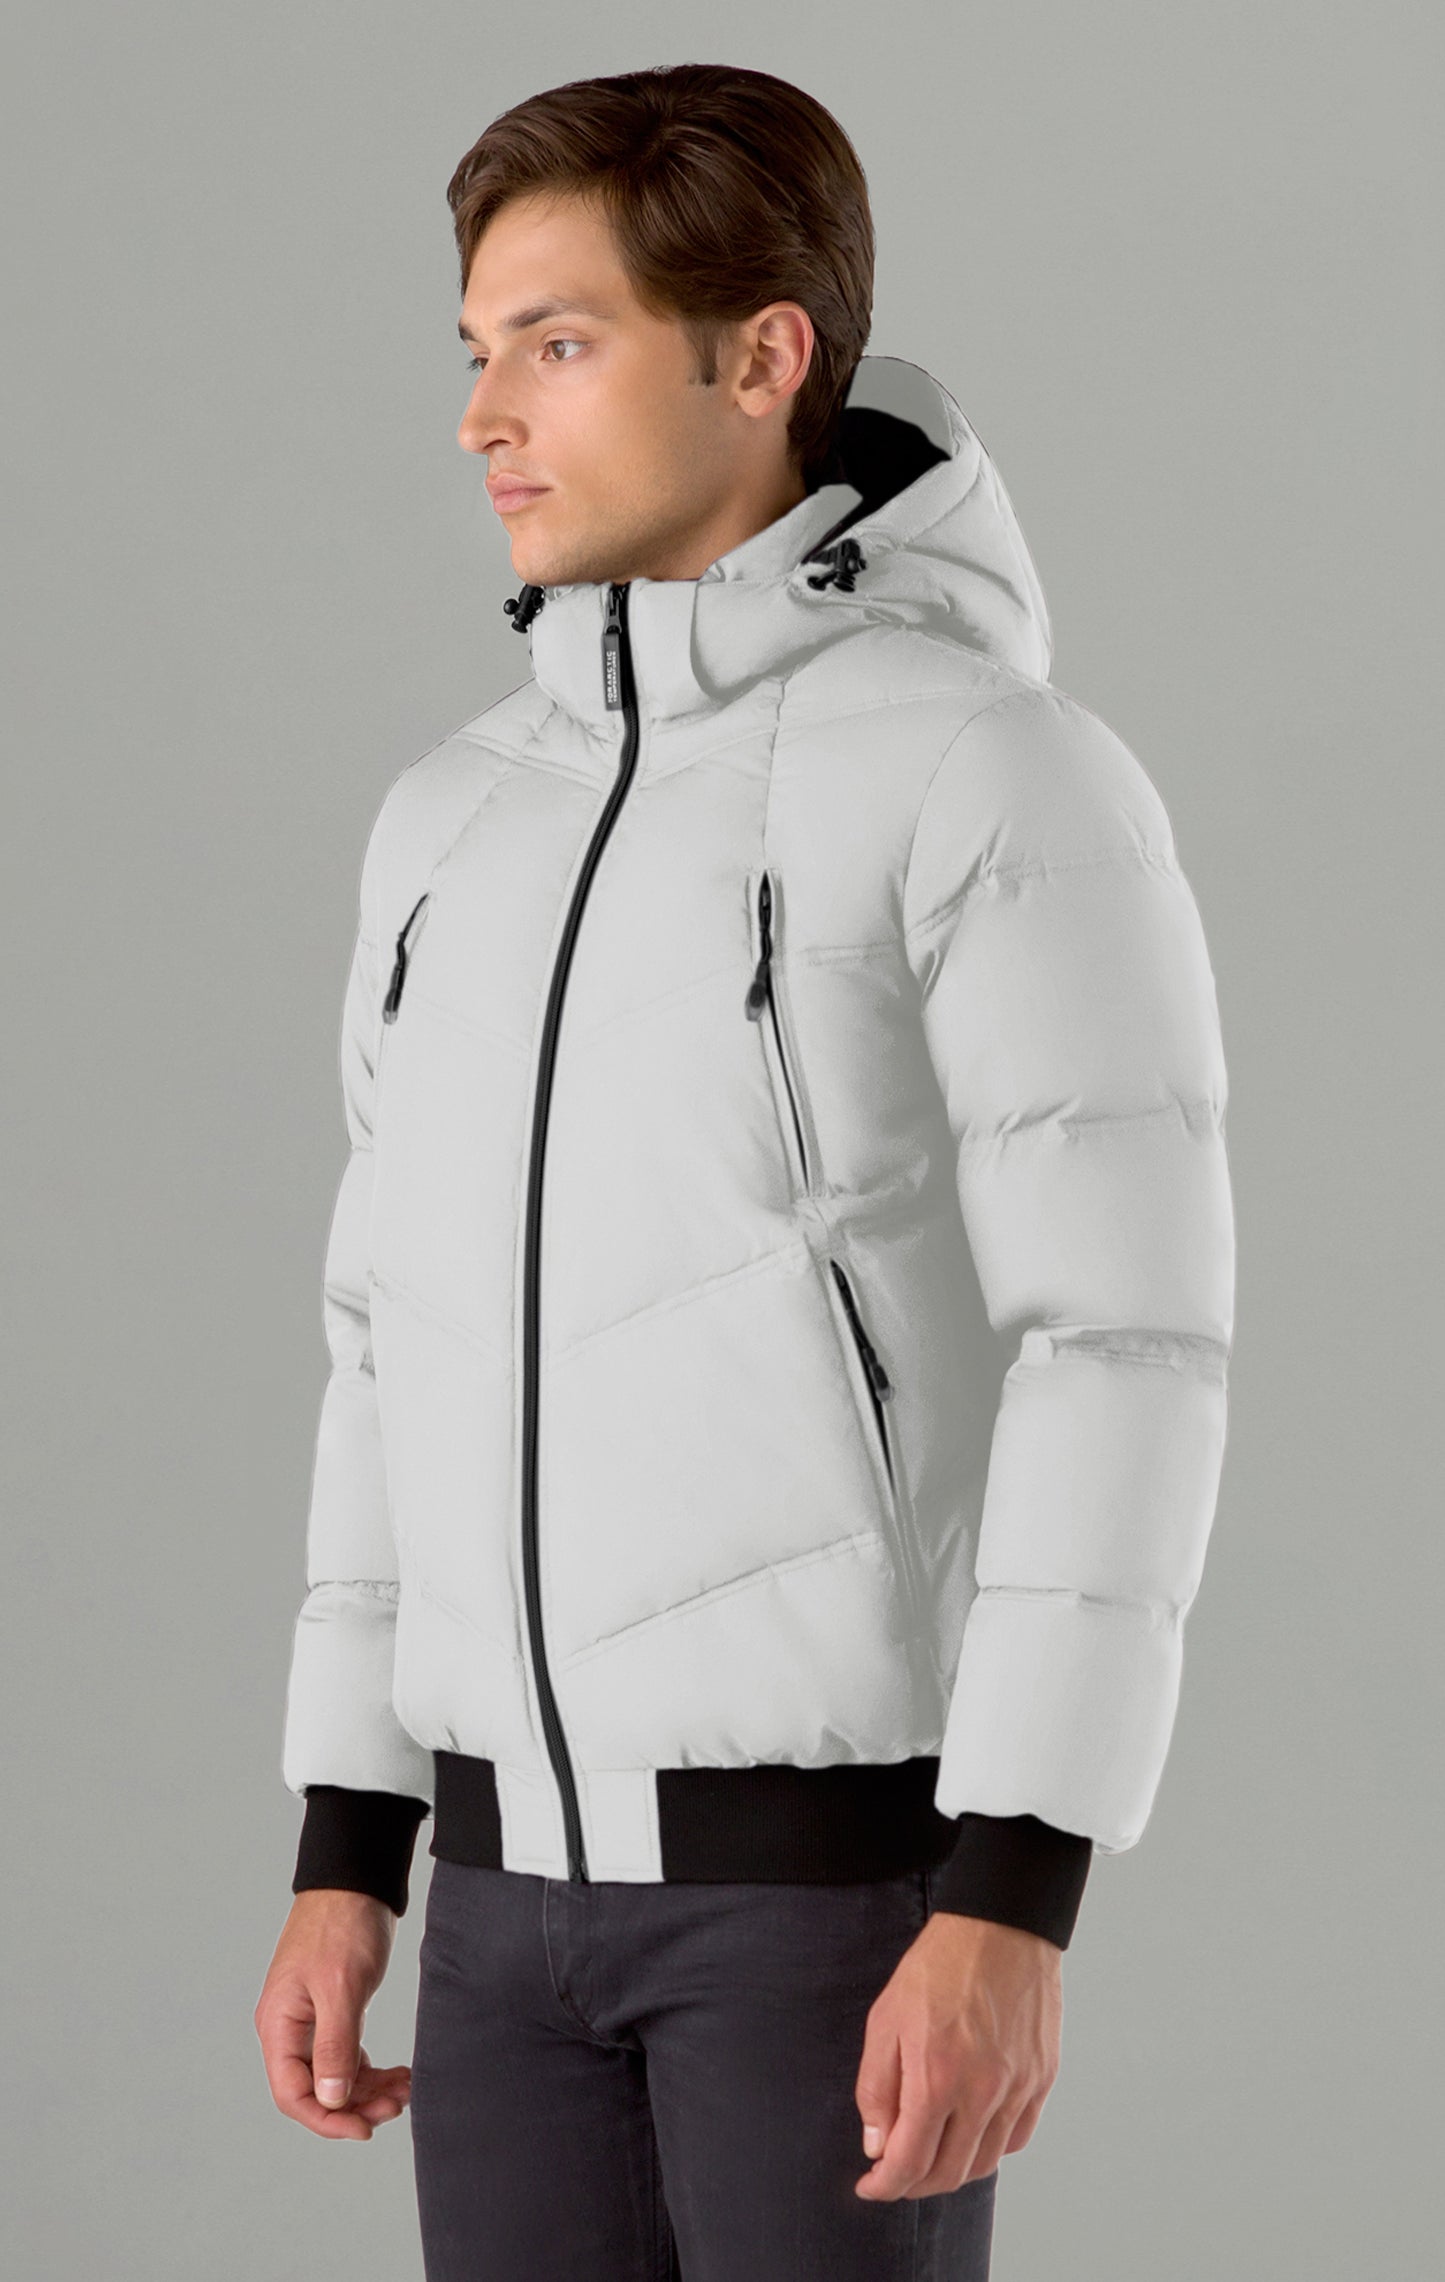 Calvin Klein Men's Hooded Super Shine Puffer Jacket White Large | eBay